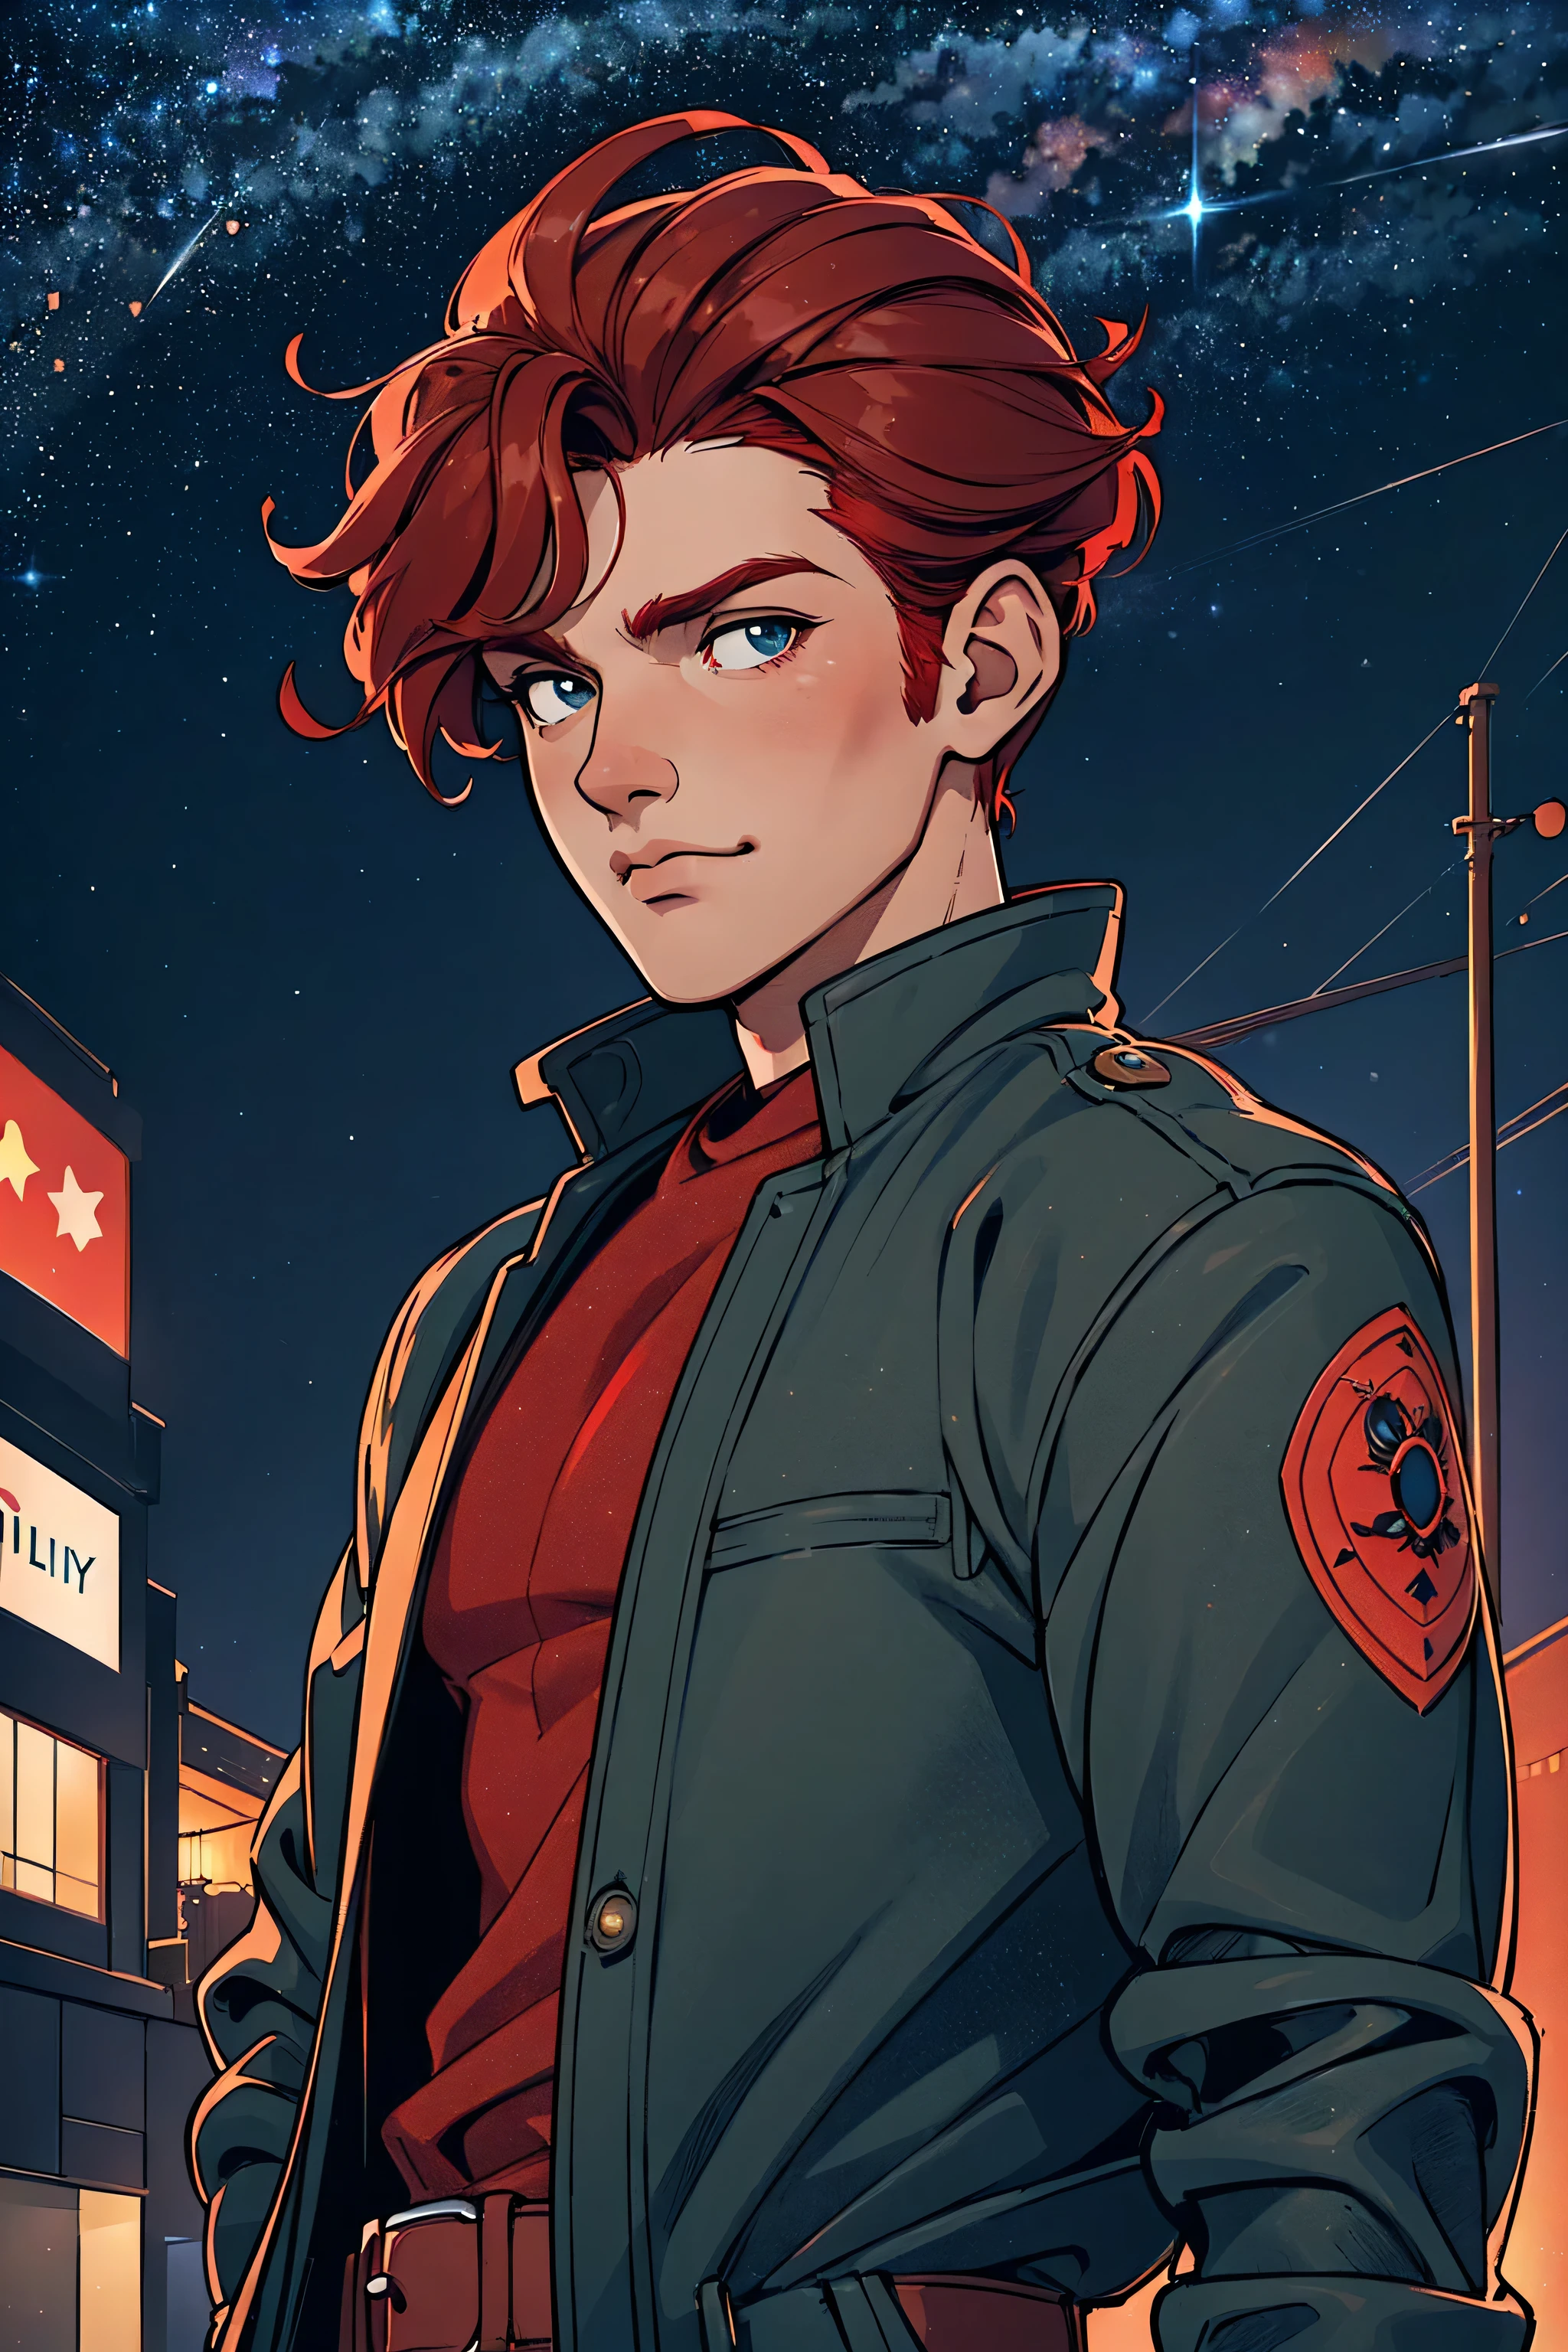 一個男人, 英俊的, 強壯的, 紅髮, 穿著夾克, 位於夜間的城市道路上, 柔和的城市照明, 背景的星空, 卡通藝術風格, 以自然的姿势, 最好的品質, 洛拉埃斯